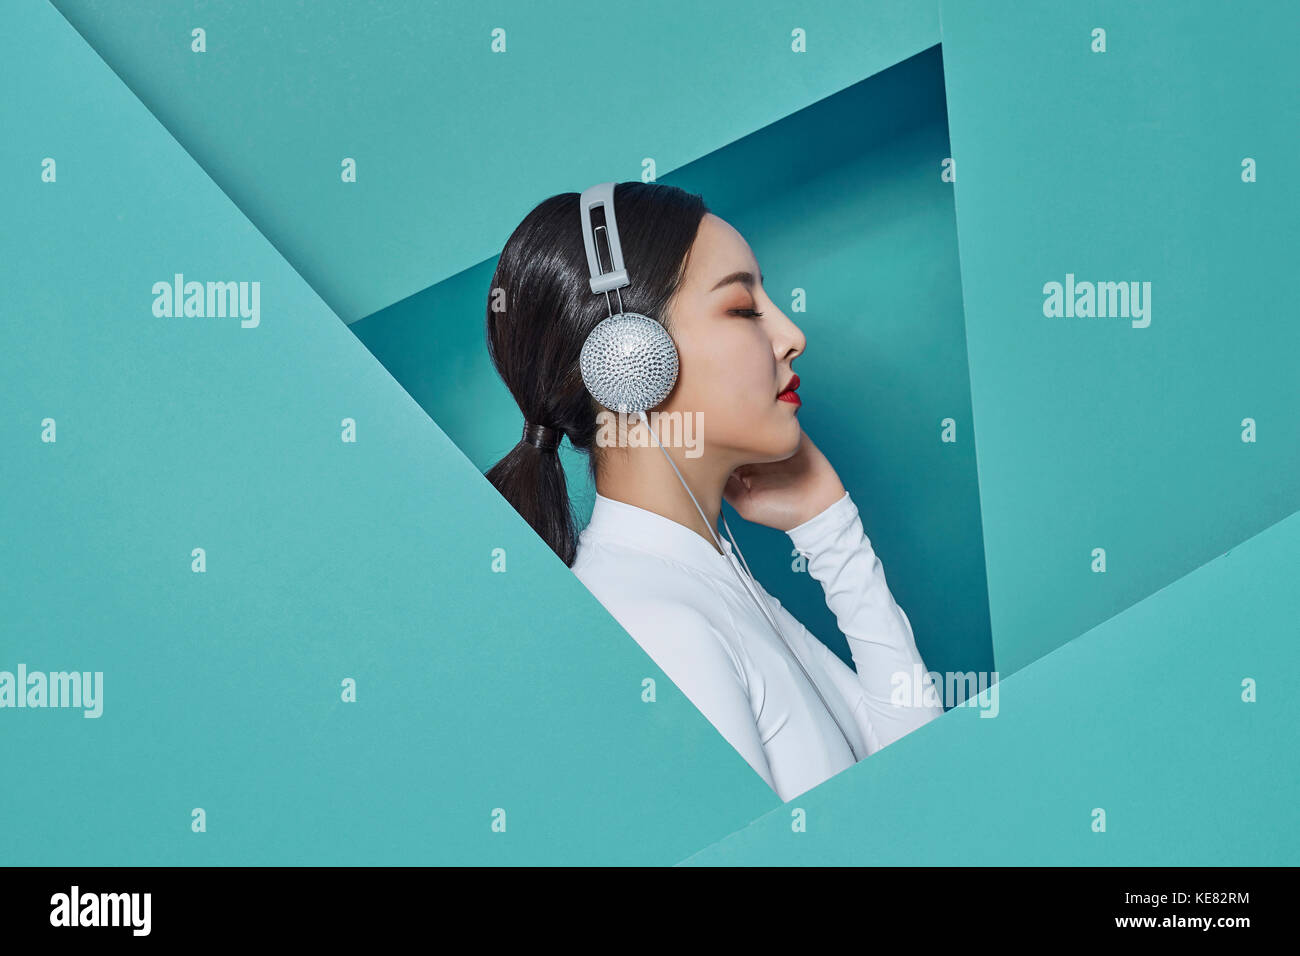 Vue de côté portrait of young woman listening to music fermer Banque D'Images